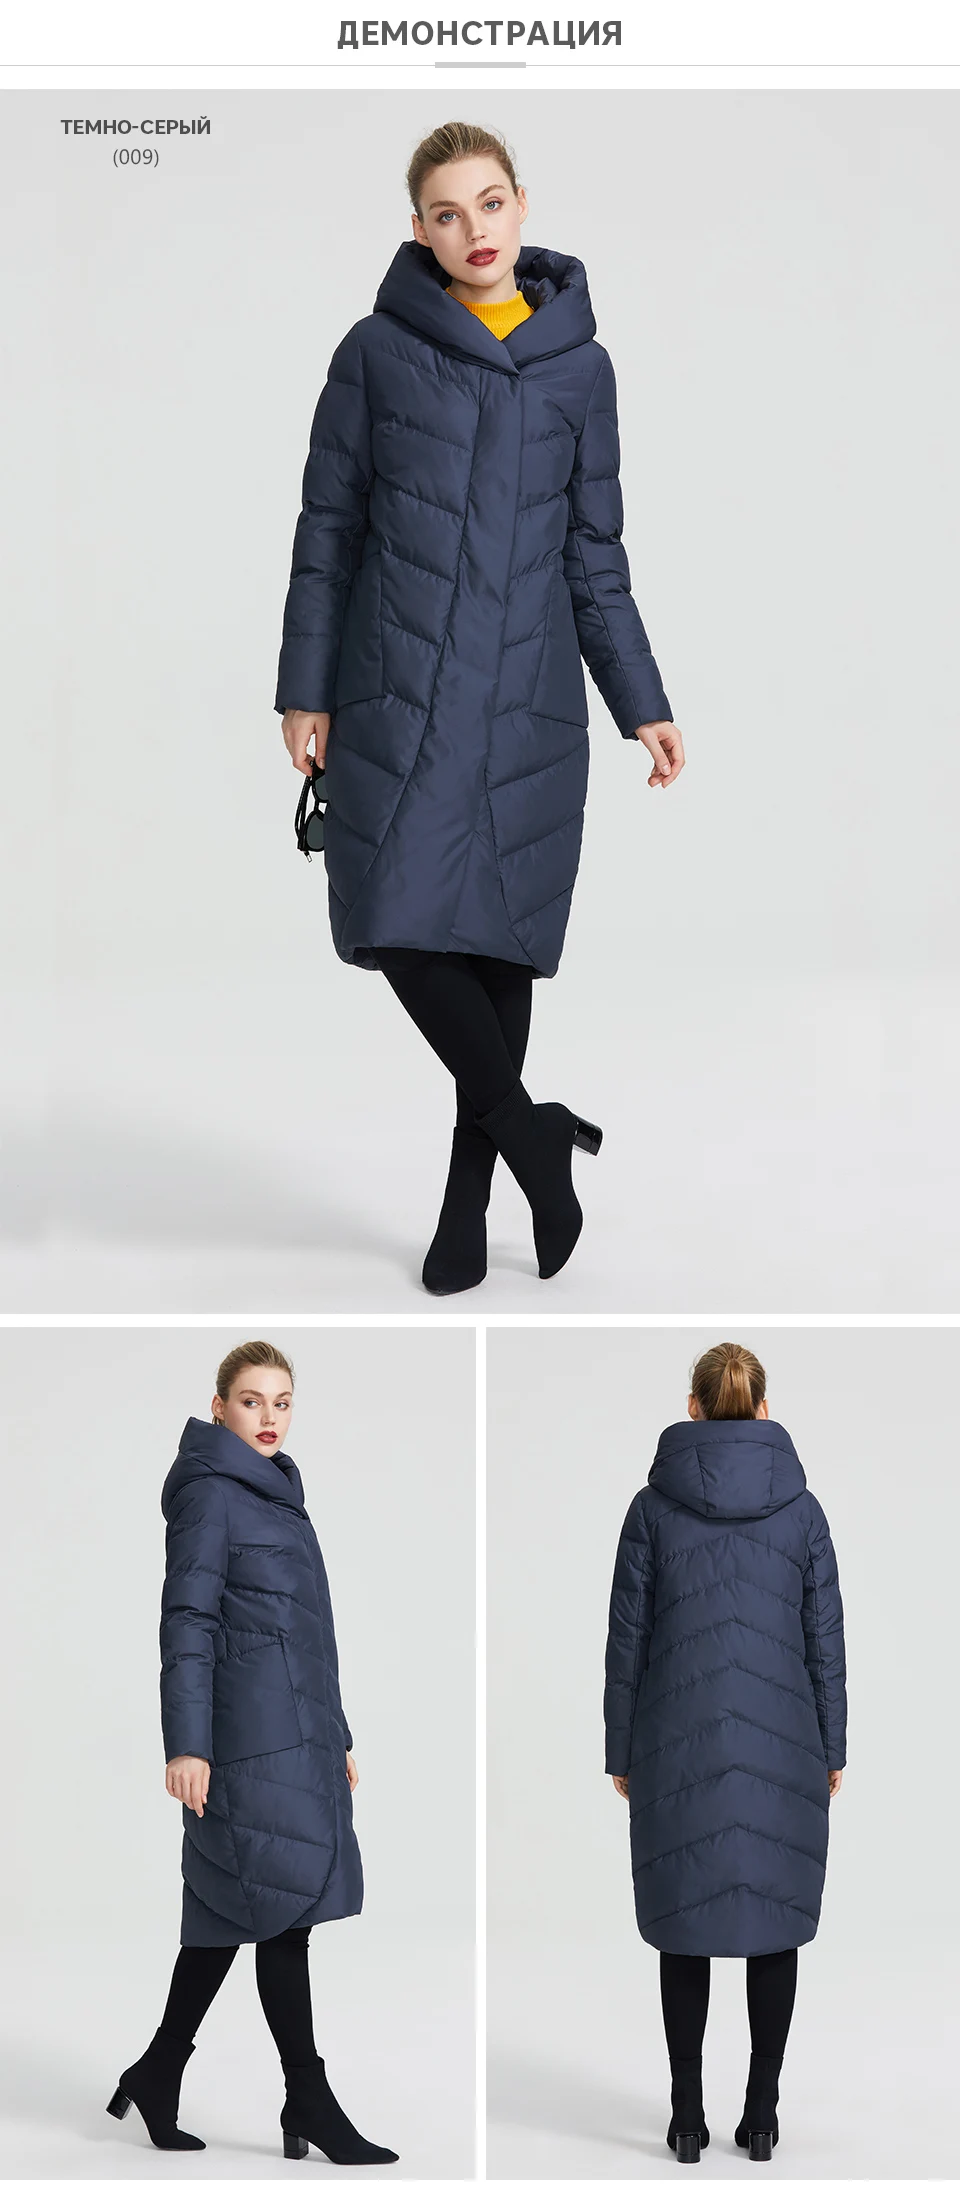 MIEGOFCE Новая зимняя женская коллекция года зимняя женская куртка имеет имеет V-образный воротник с капюшоном который защитит от холода имеет накладные карманы который придает этой модели небычный стиль